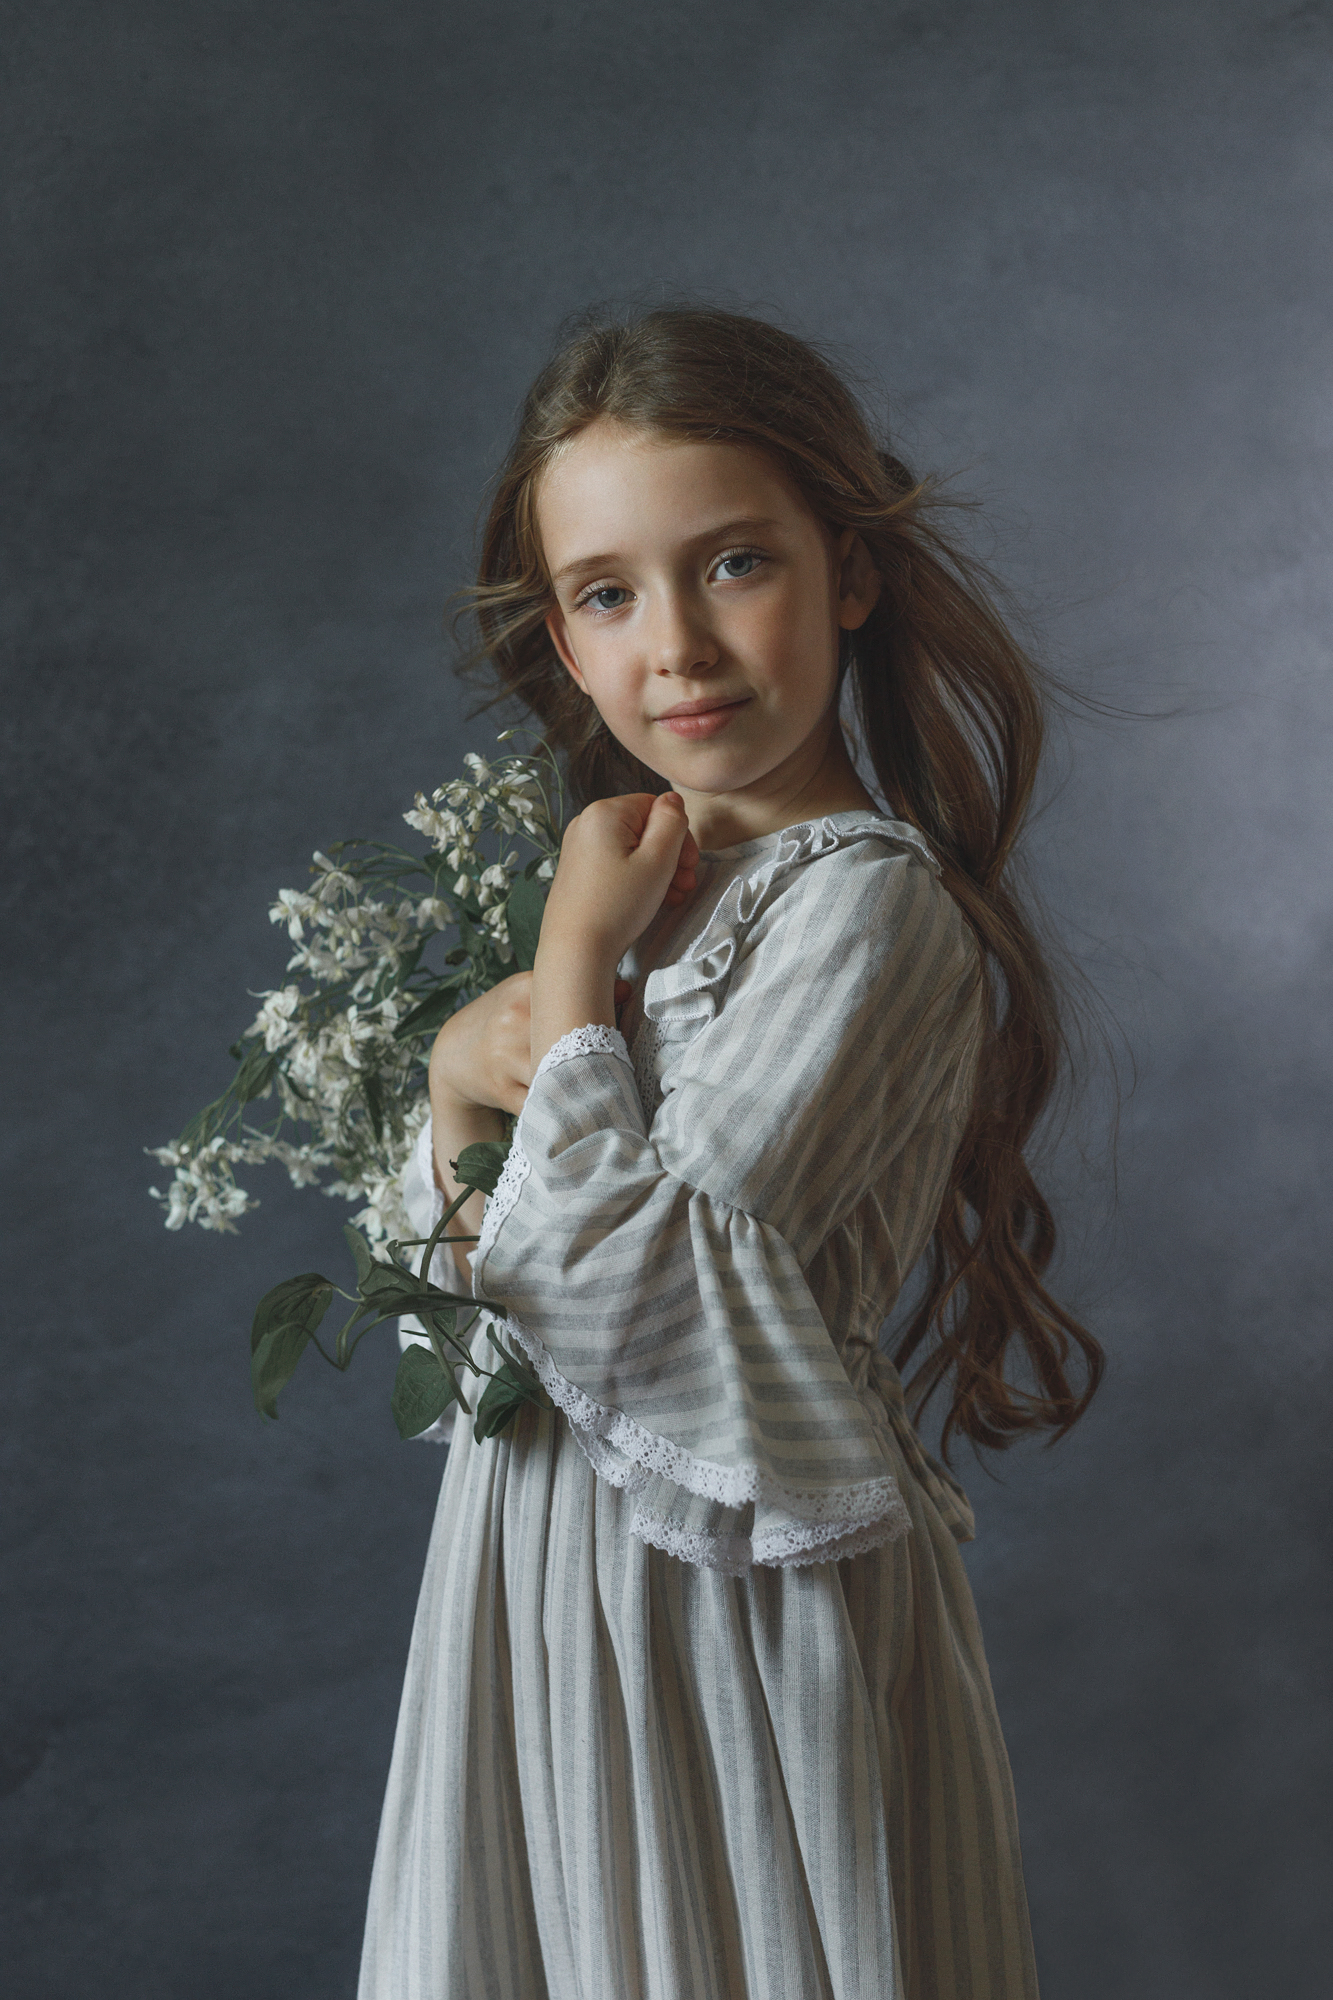 малышка, красивая, девочка, студия, портрет, цветы, длинные волосы, лица, цвет, Ведмеденко Оксана